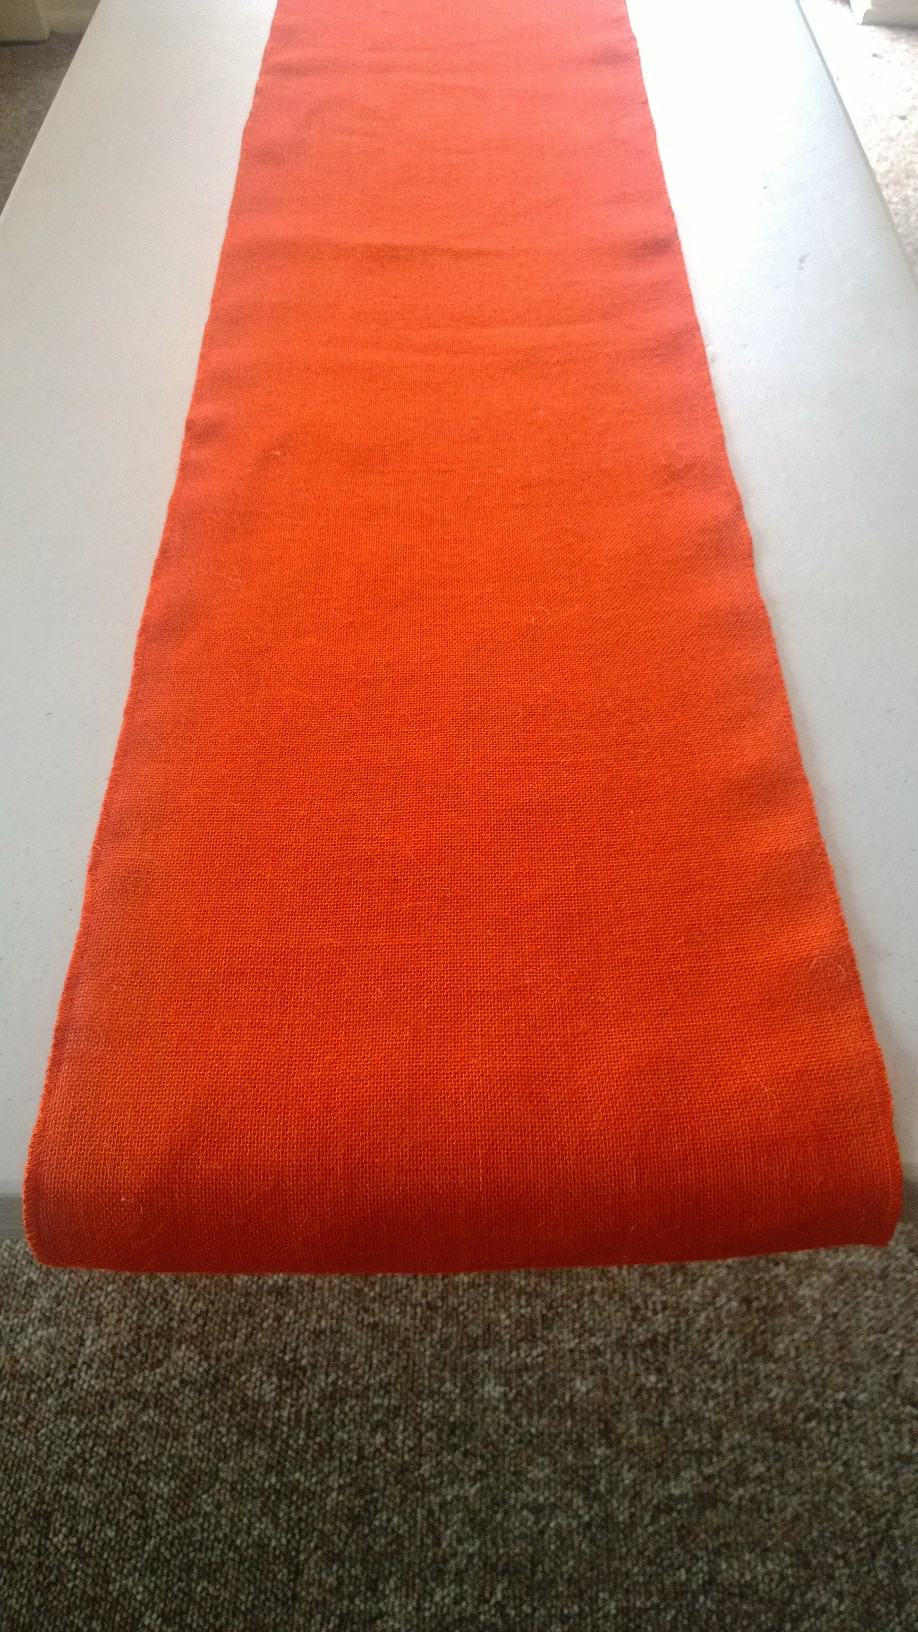 Tangerine Burlap Table Runner (Sewn Edges) - 14" x 72"